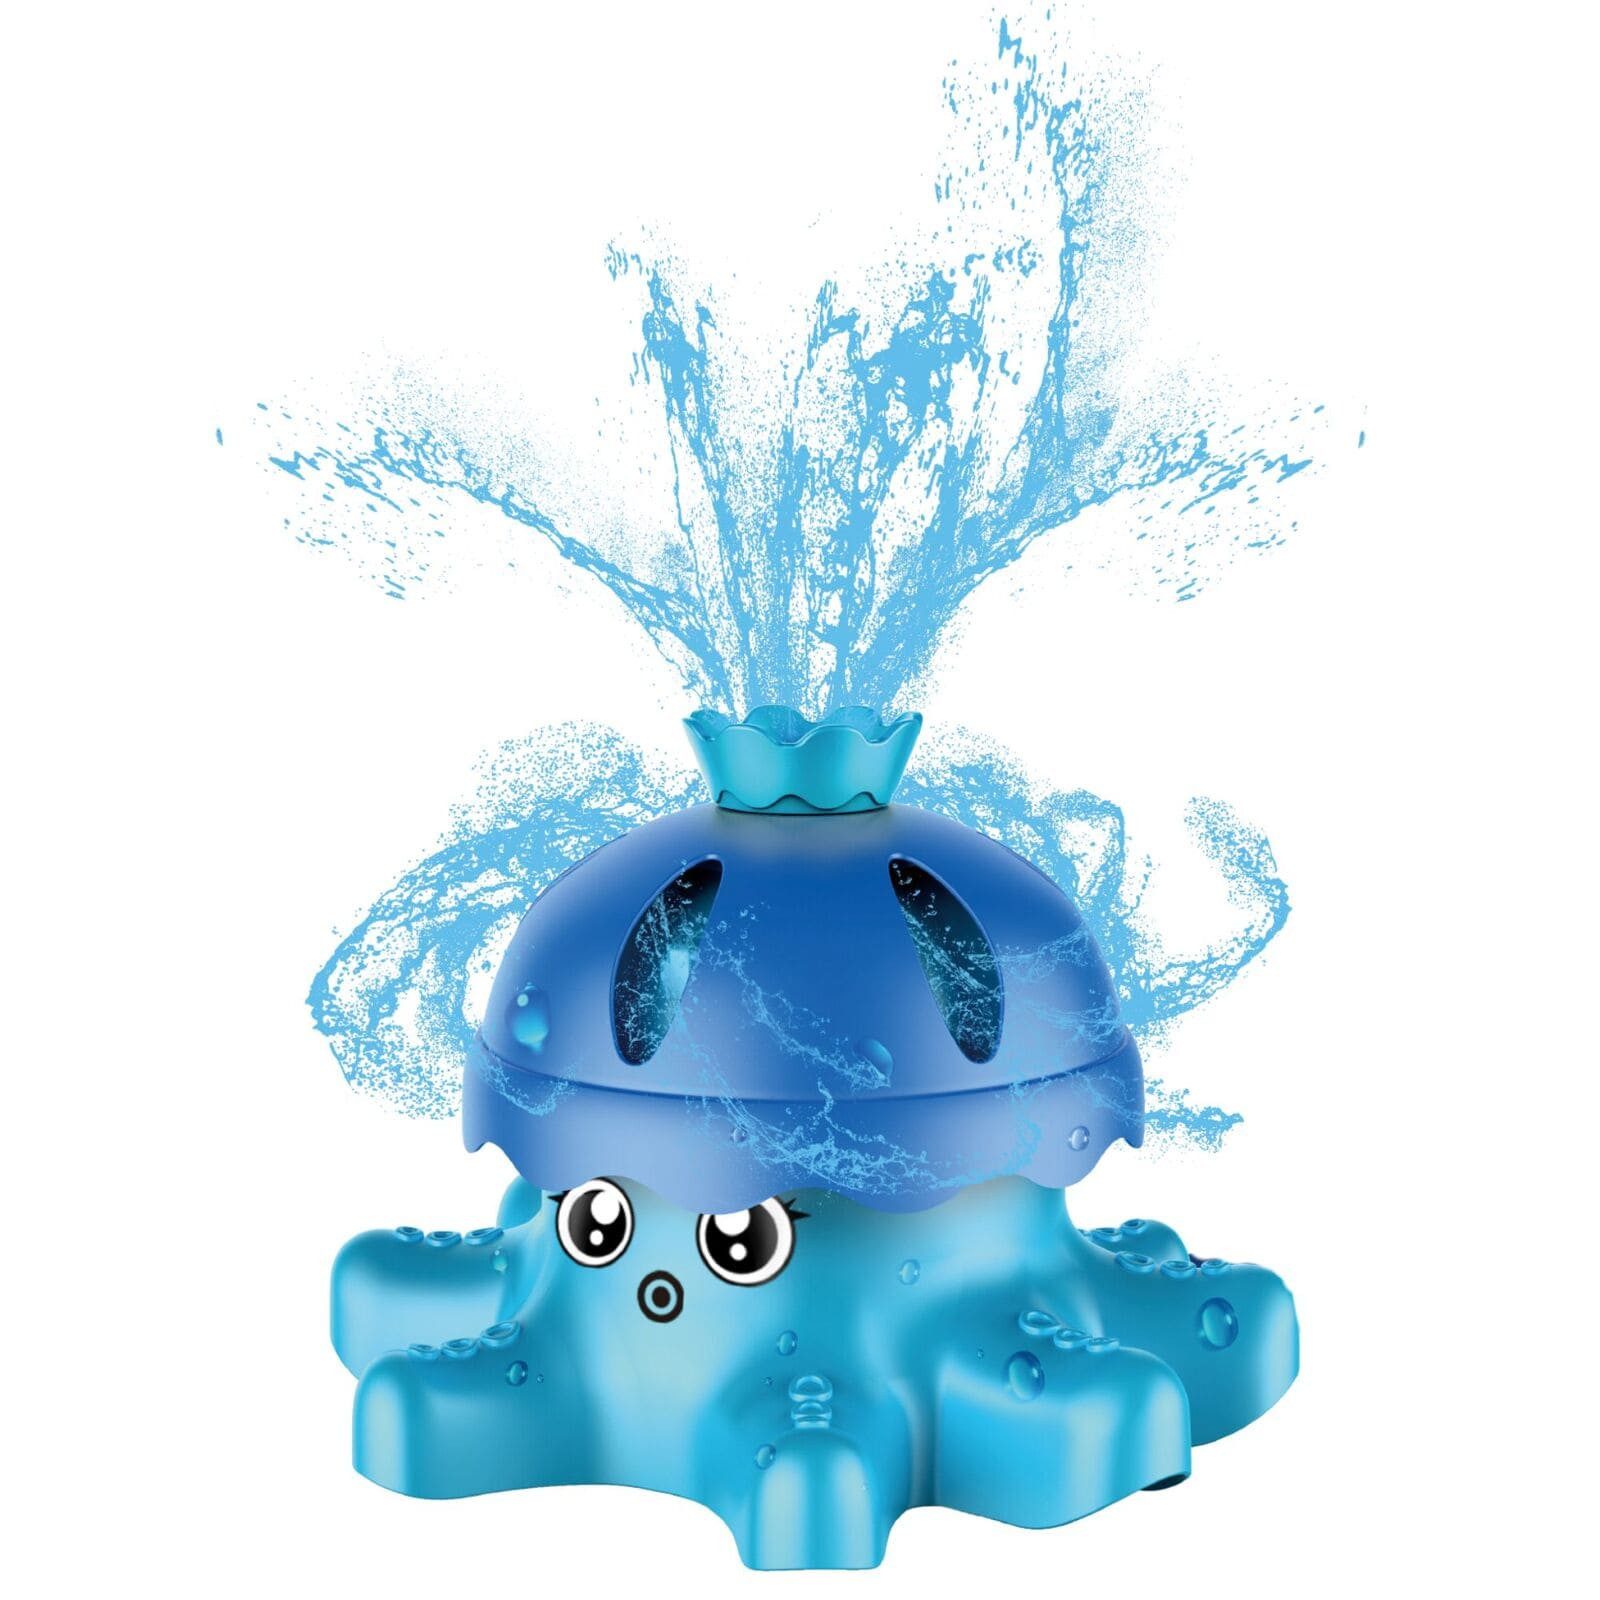 alldoro Spiel-Wassersprenkler 60213, im Oktopus-Design, Outdoorspielzeug für spritzige Abkühlung im Sommer